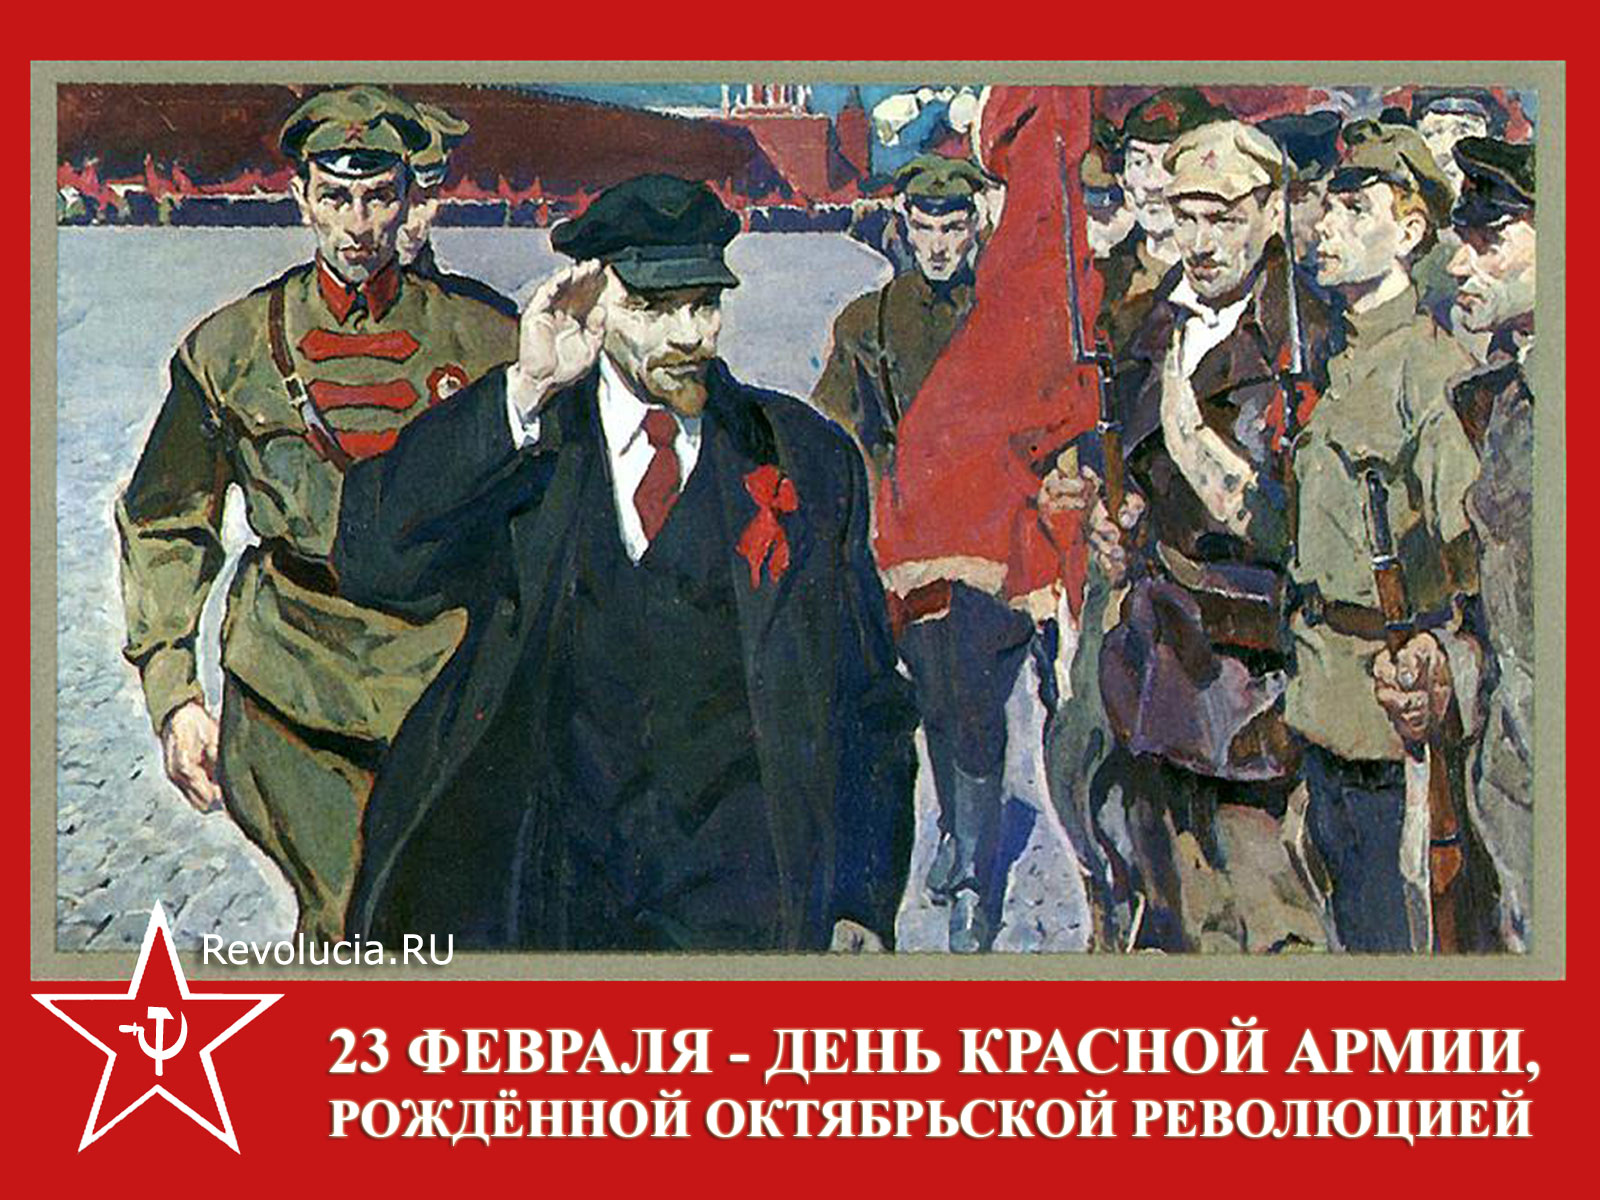 Обои 23 февраля - День Красной Армии, рождённой Октябрьской революцией :: обои Революция.RU